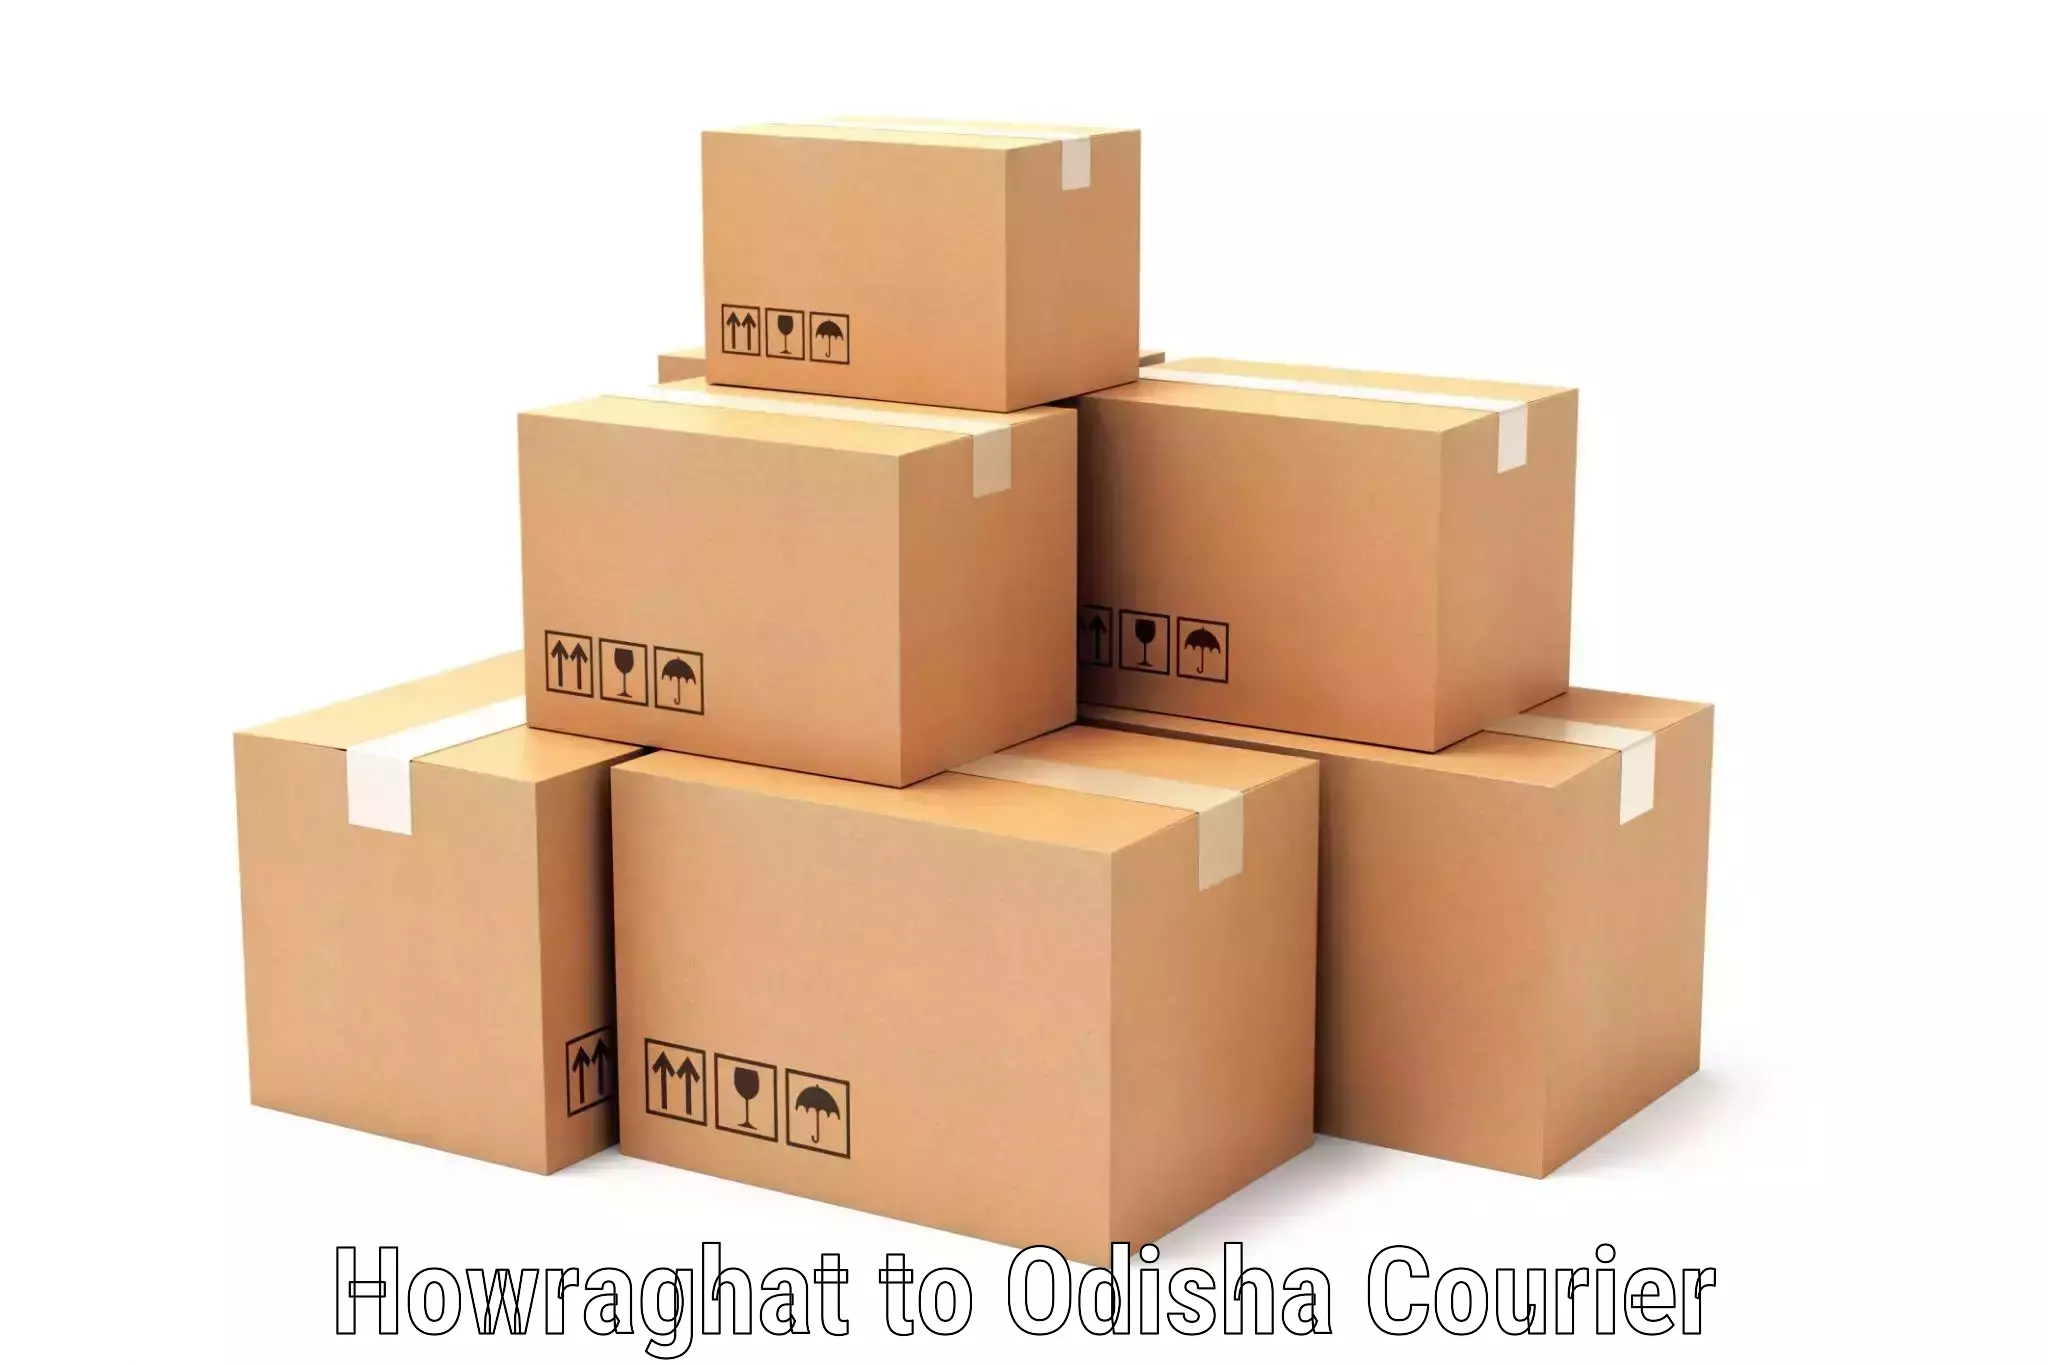 E-commerce shipping partnerships Howraghat to Dukura